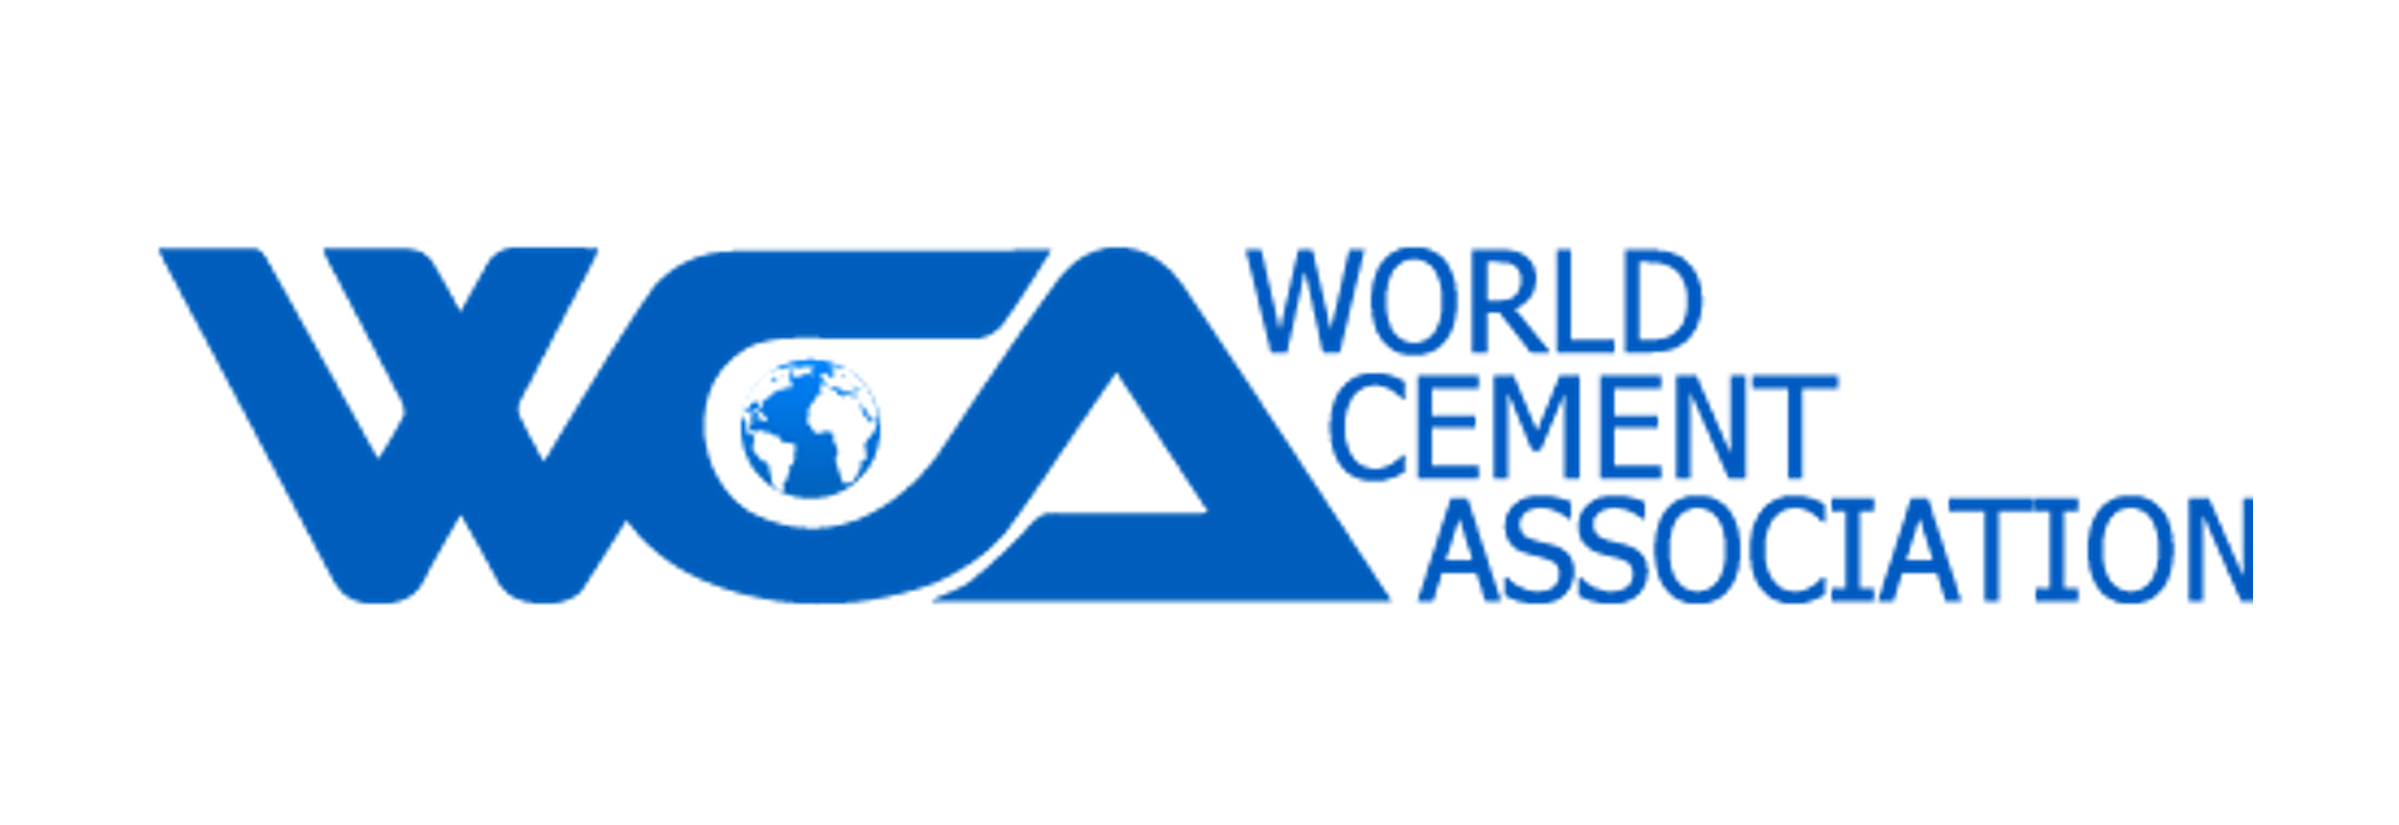 World Cement Association Logo